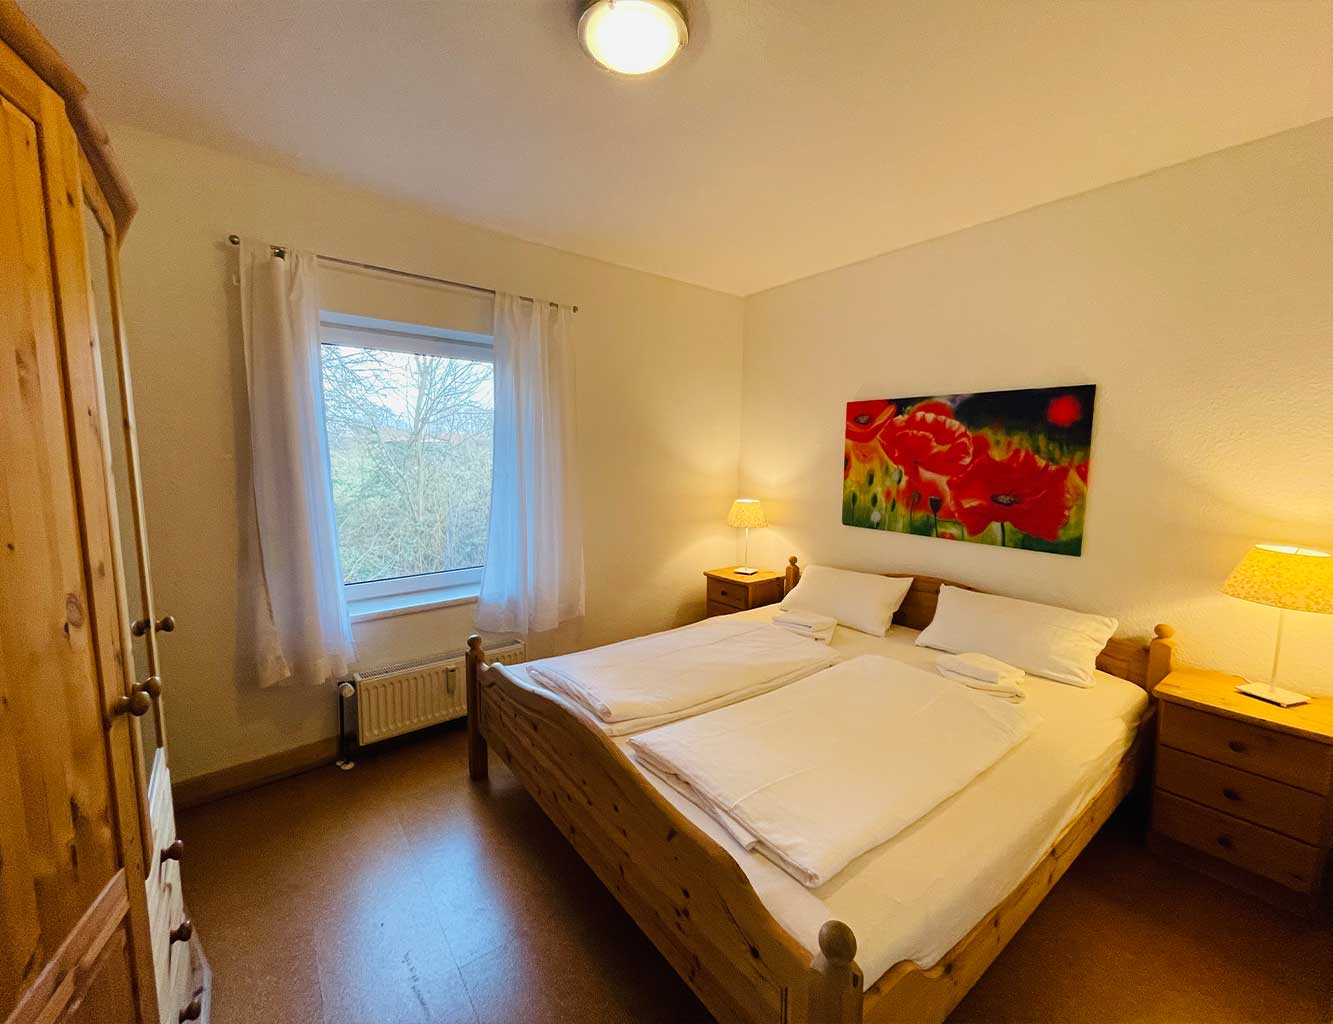 Schlafzimmer in der Ferienwohnung in Hollern-Twielenfleth